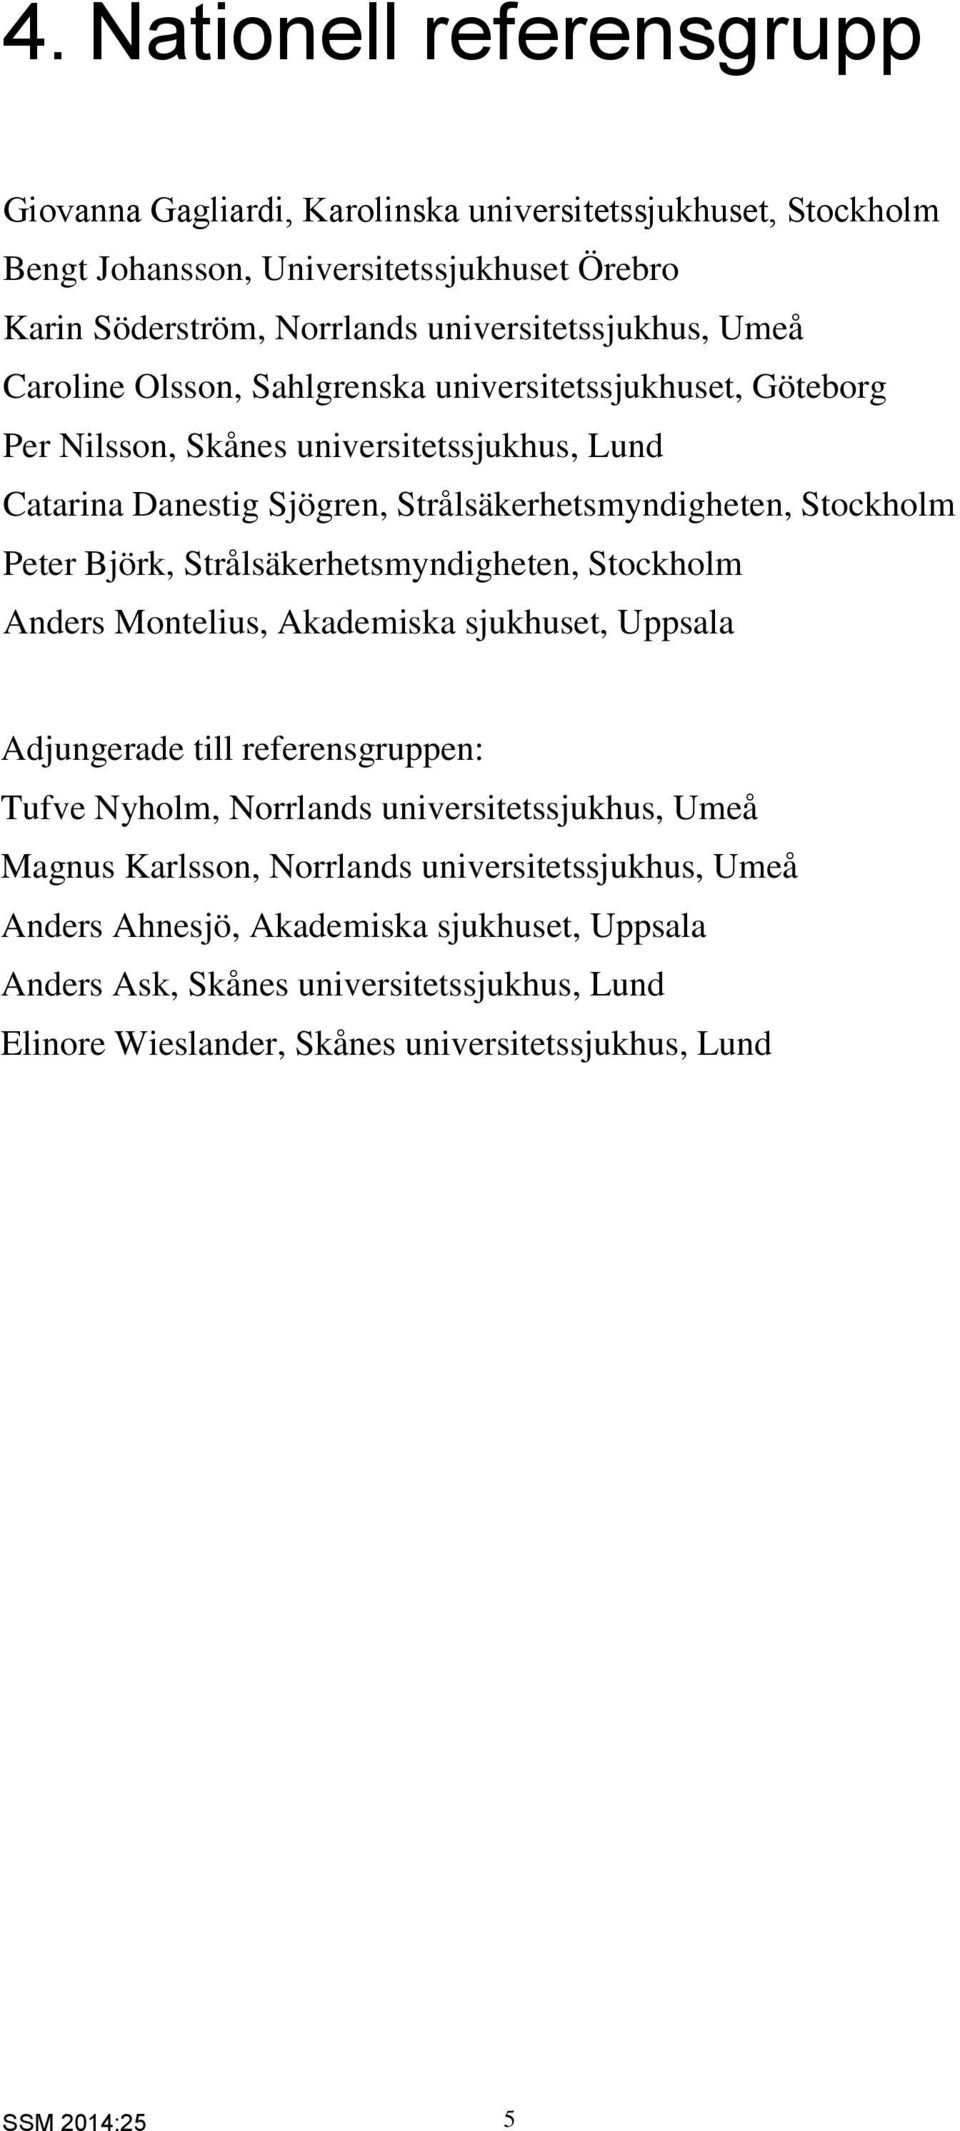 Björk, Strålsäkerhetsmyndigheten, Stockholm Anders Montelius, Akademiska sjukhuset, Uppsala Adjungerade till referensgruppen: Tufve Nyholm, Norrlands universitetssjukhus, Umeå Magnus